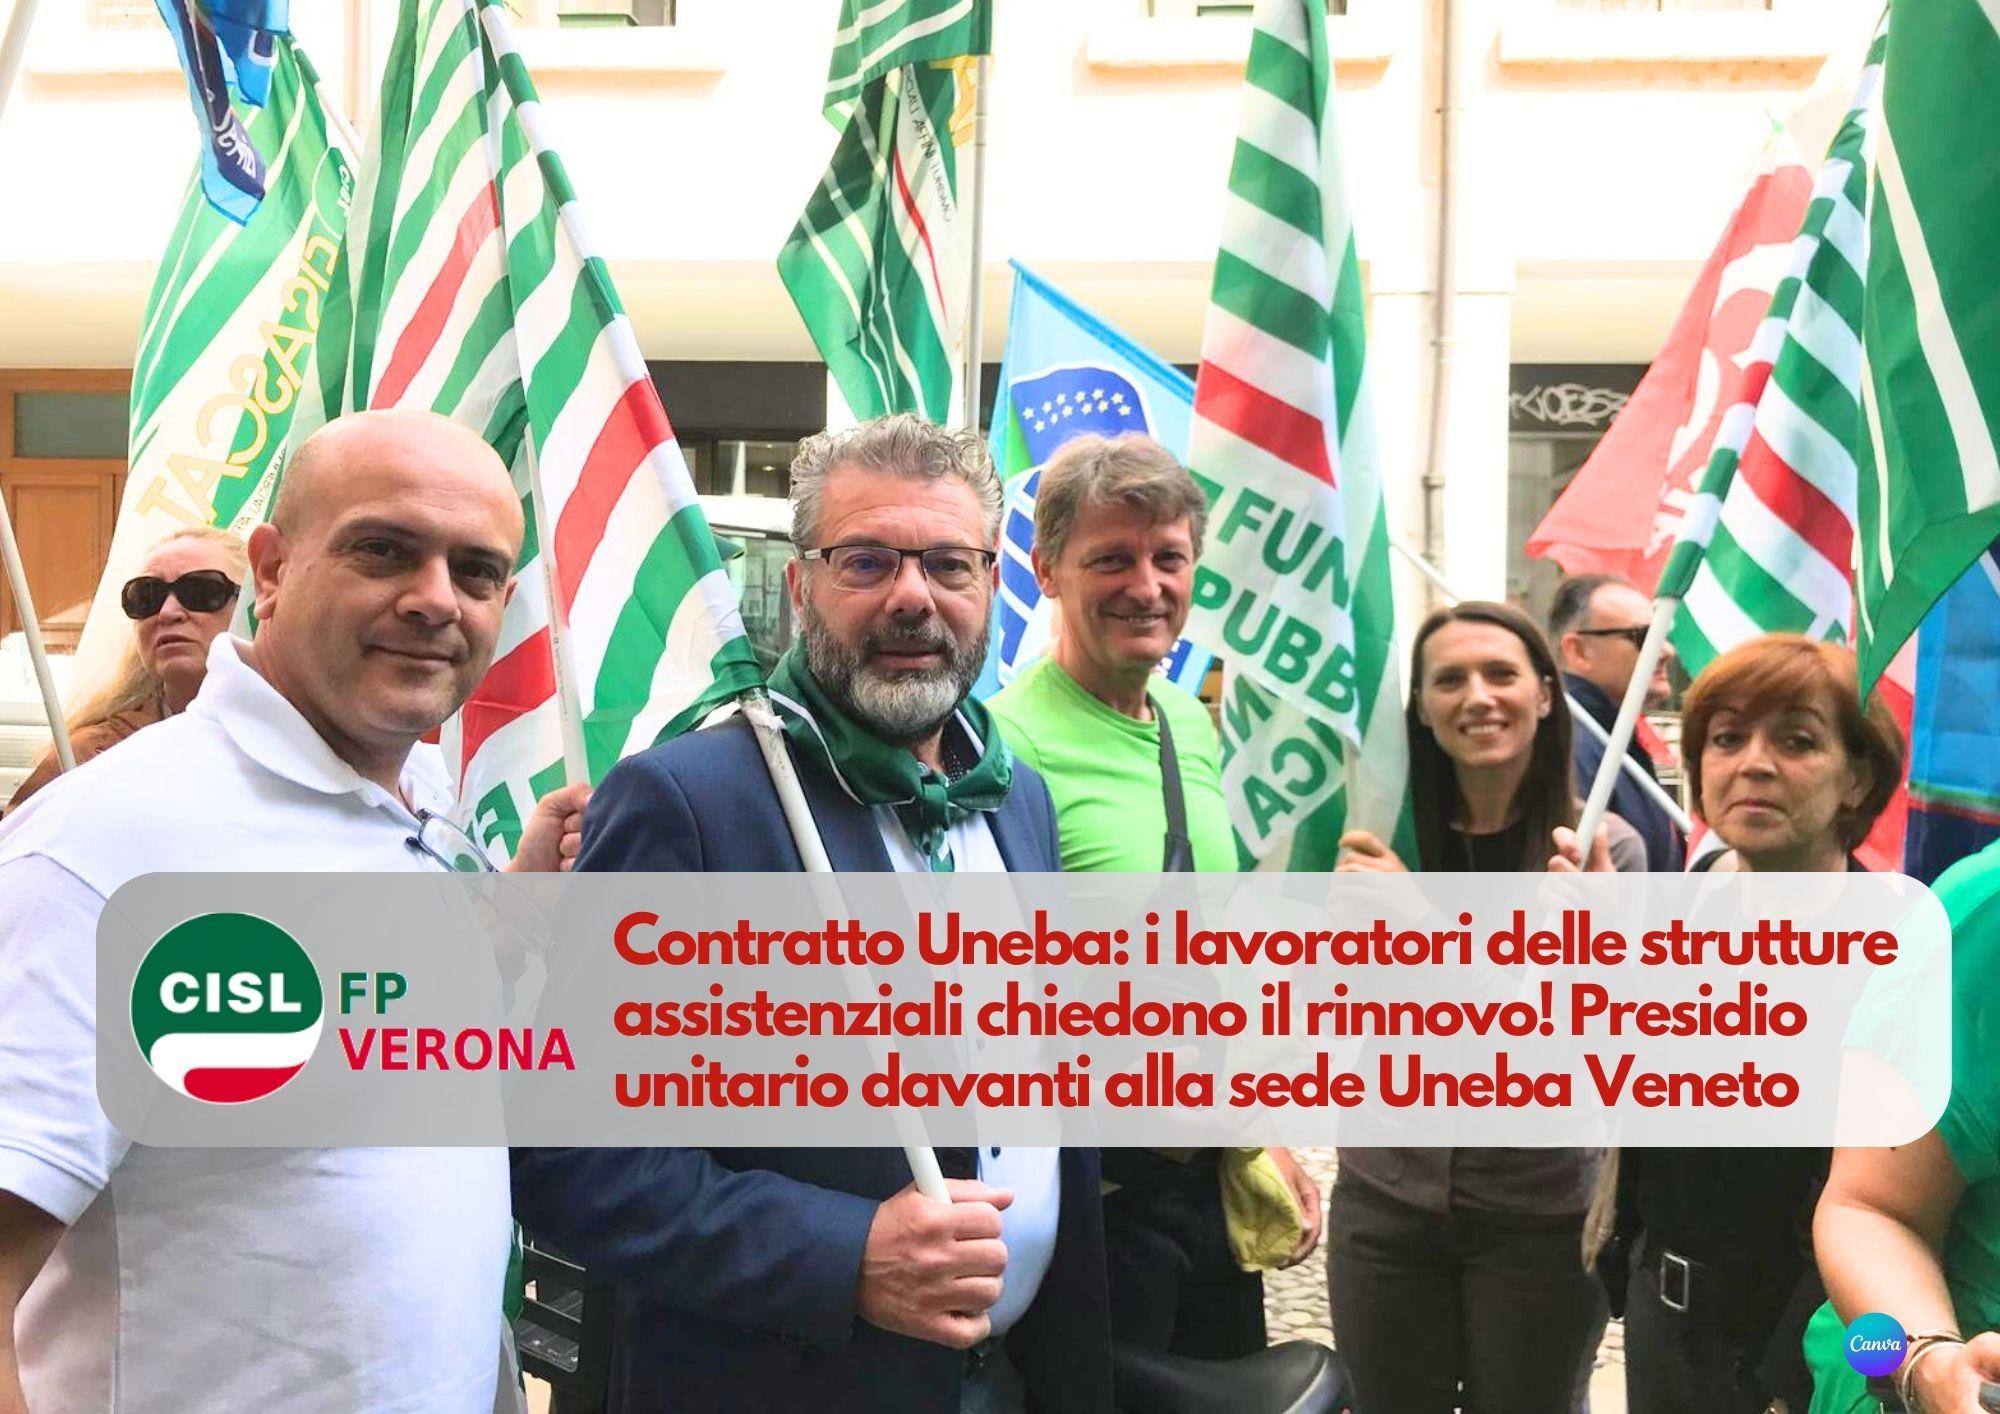 CISL FP Verona. Contratto Uneba: i lavoratori delle strutture assistenziali chiedono il rinnovo!